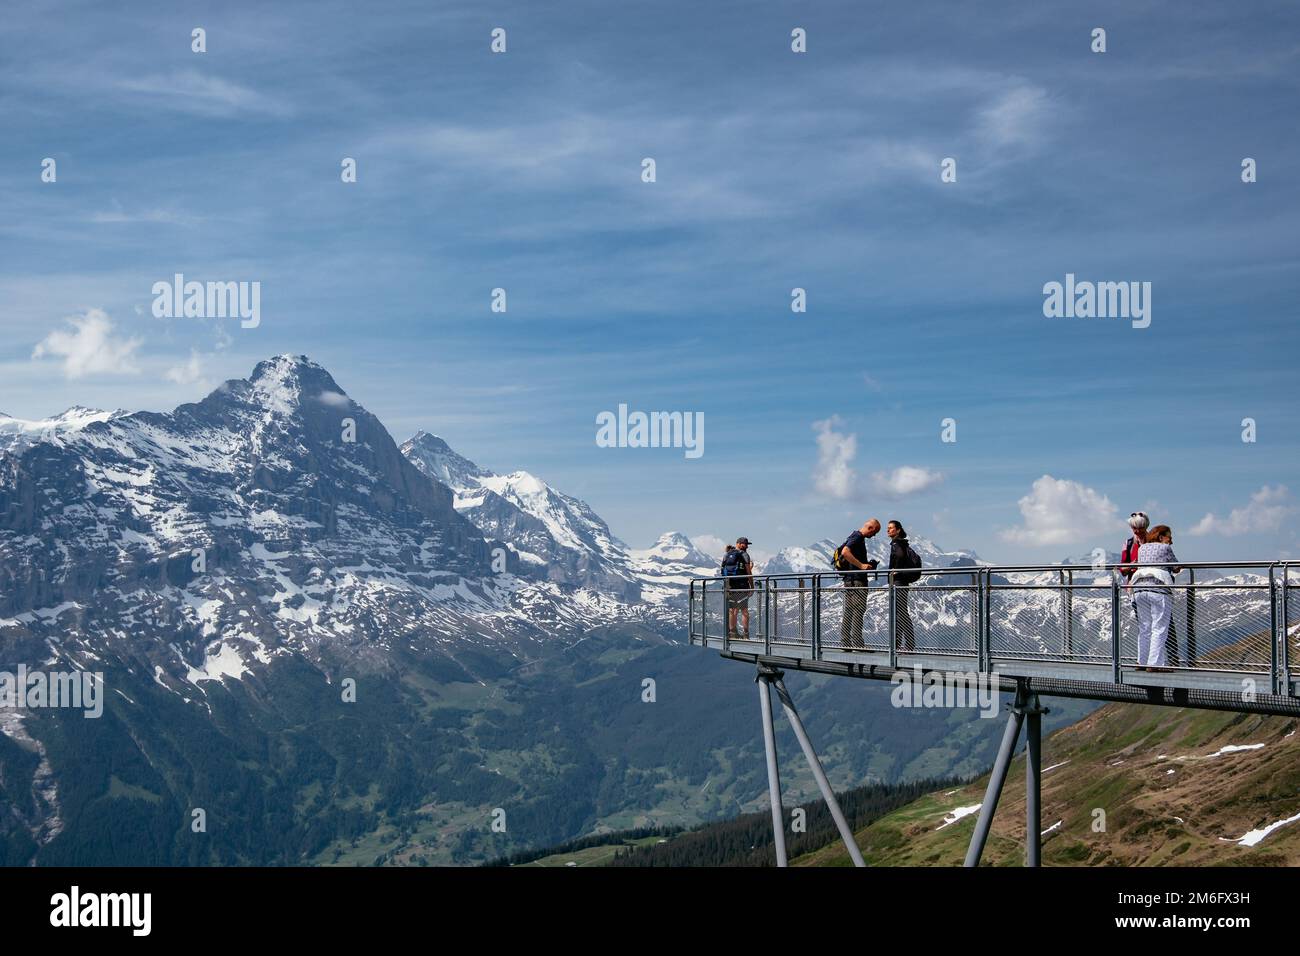 Cliff Walk, eine beliebte Aussichtsplattform auf dem ersten Berg in Grindelwald, mit atemberaubendem Blick auf die Alpen, Schweiz - S. Stockfoto